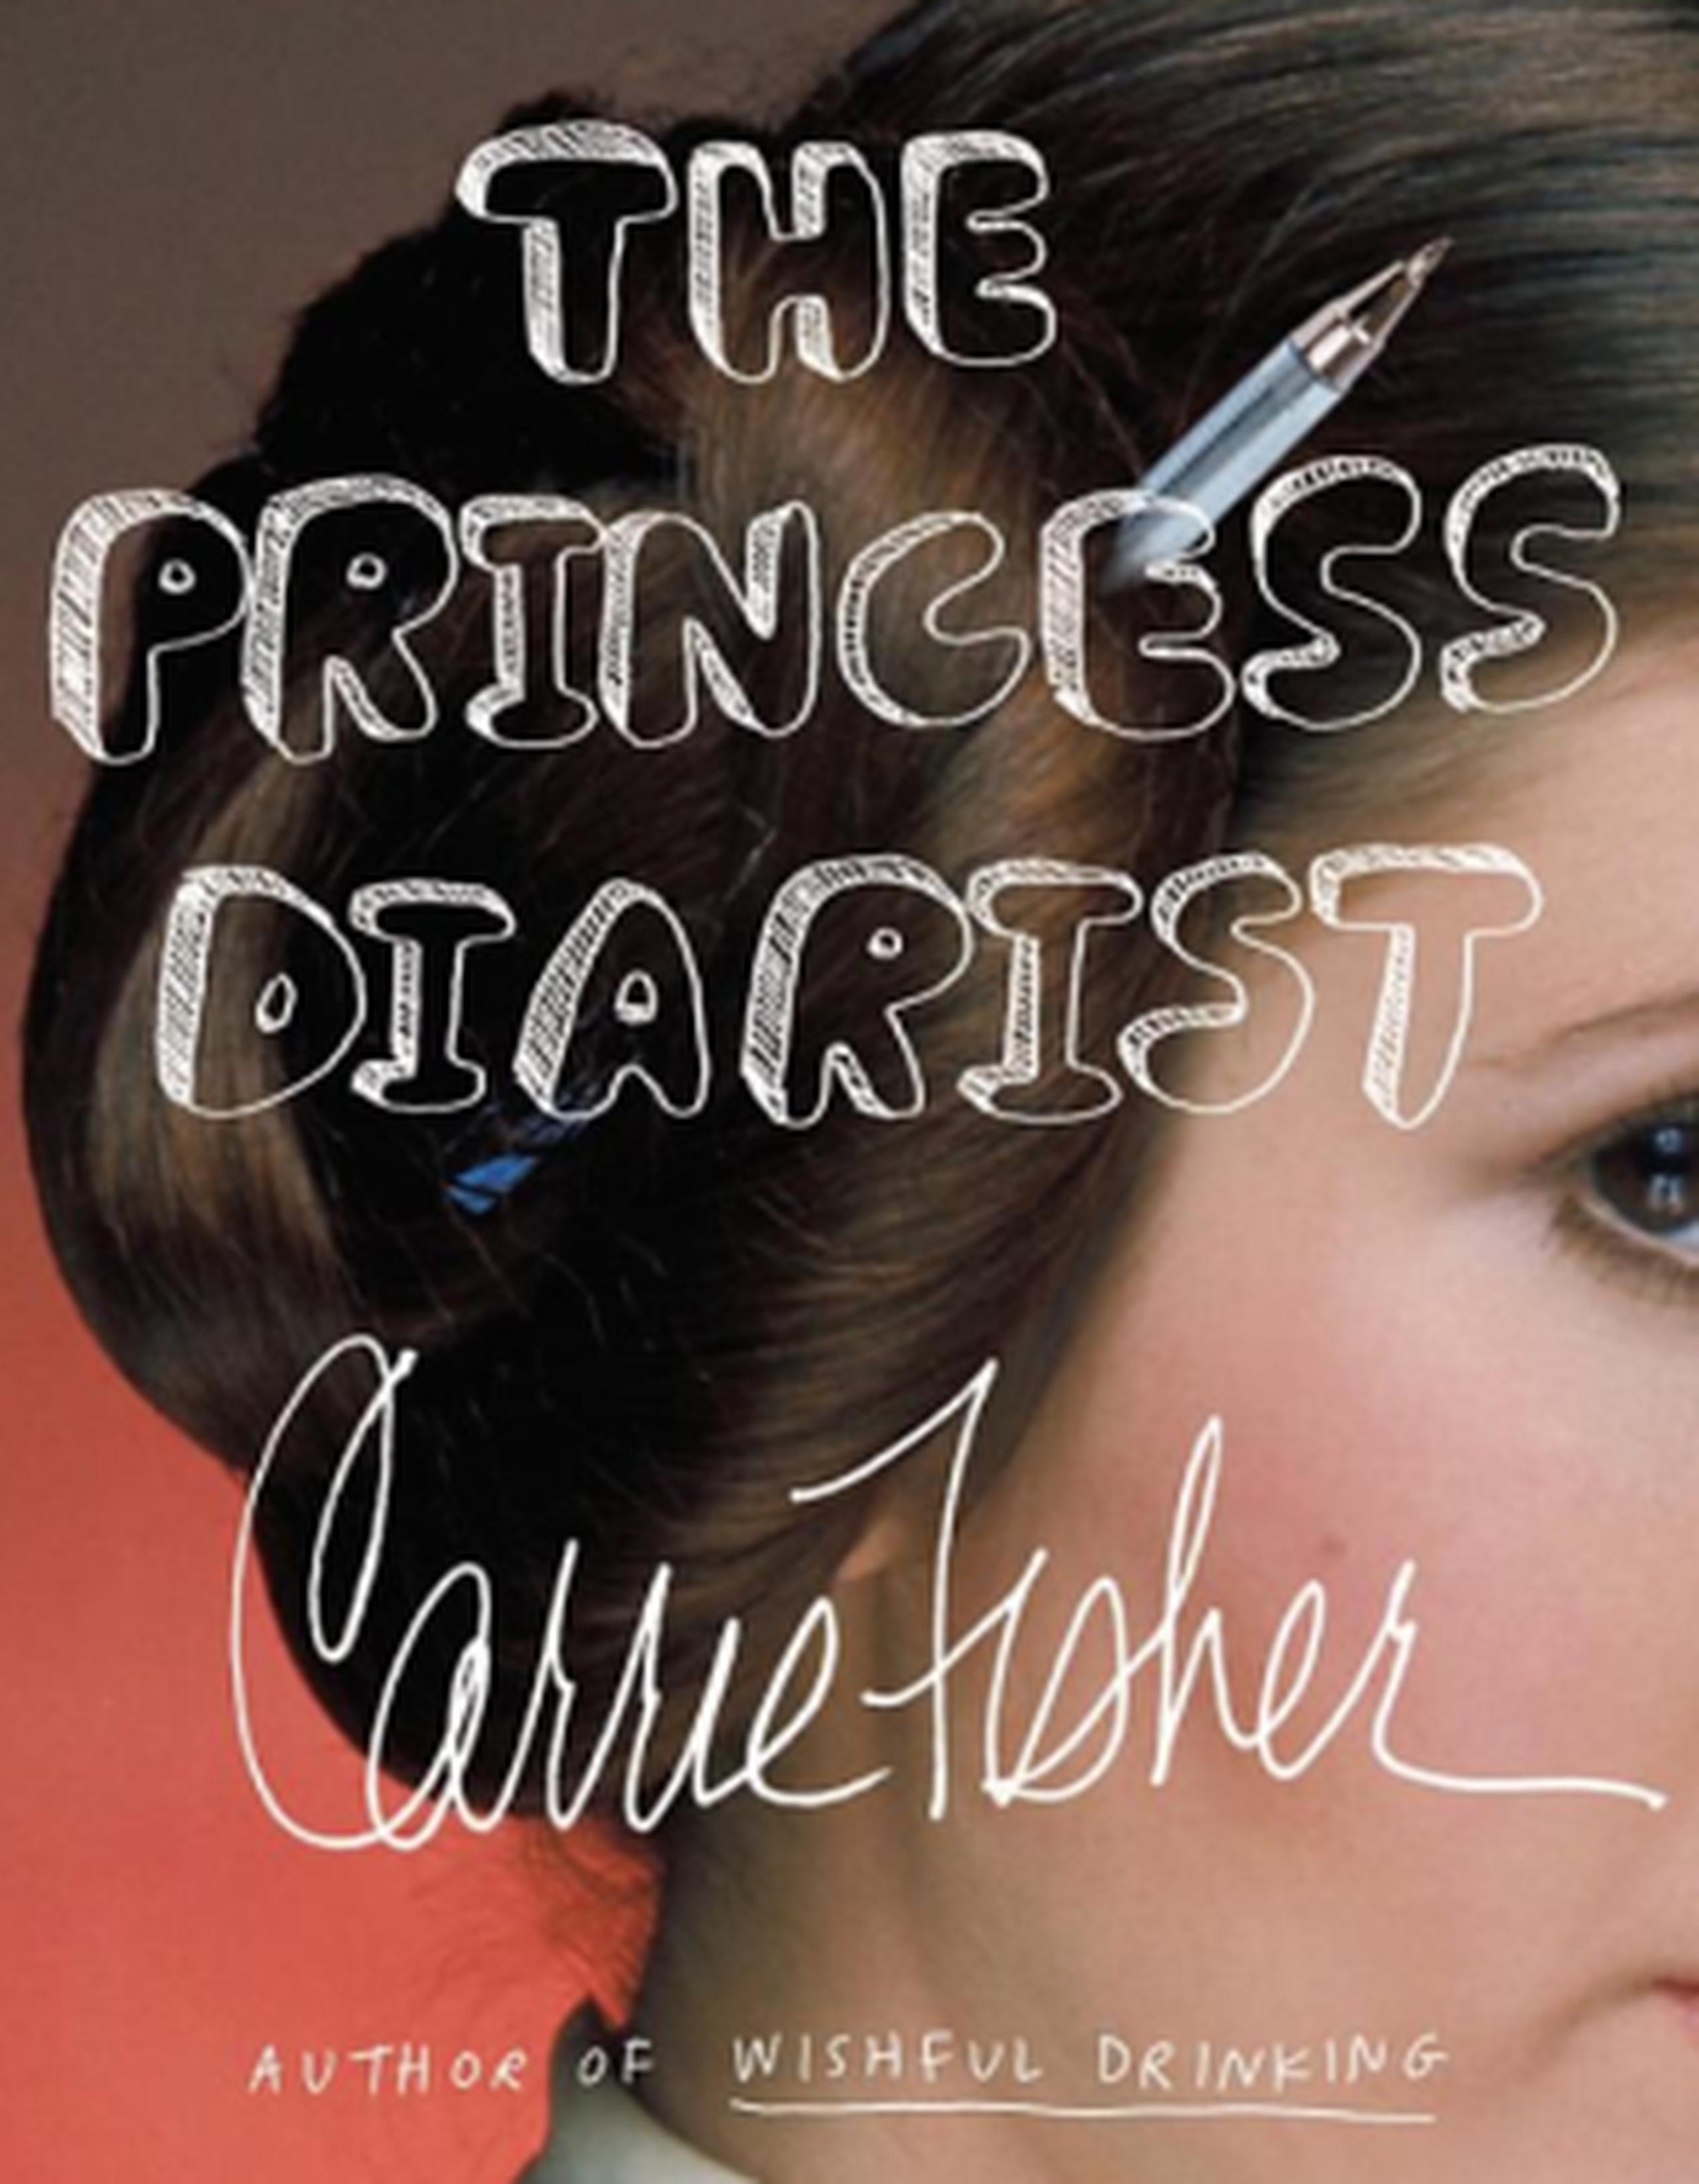 Carátula del libro "The Princess Diarist". (Amazon)